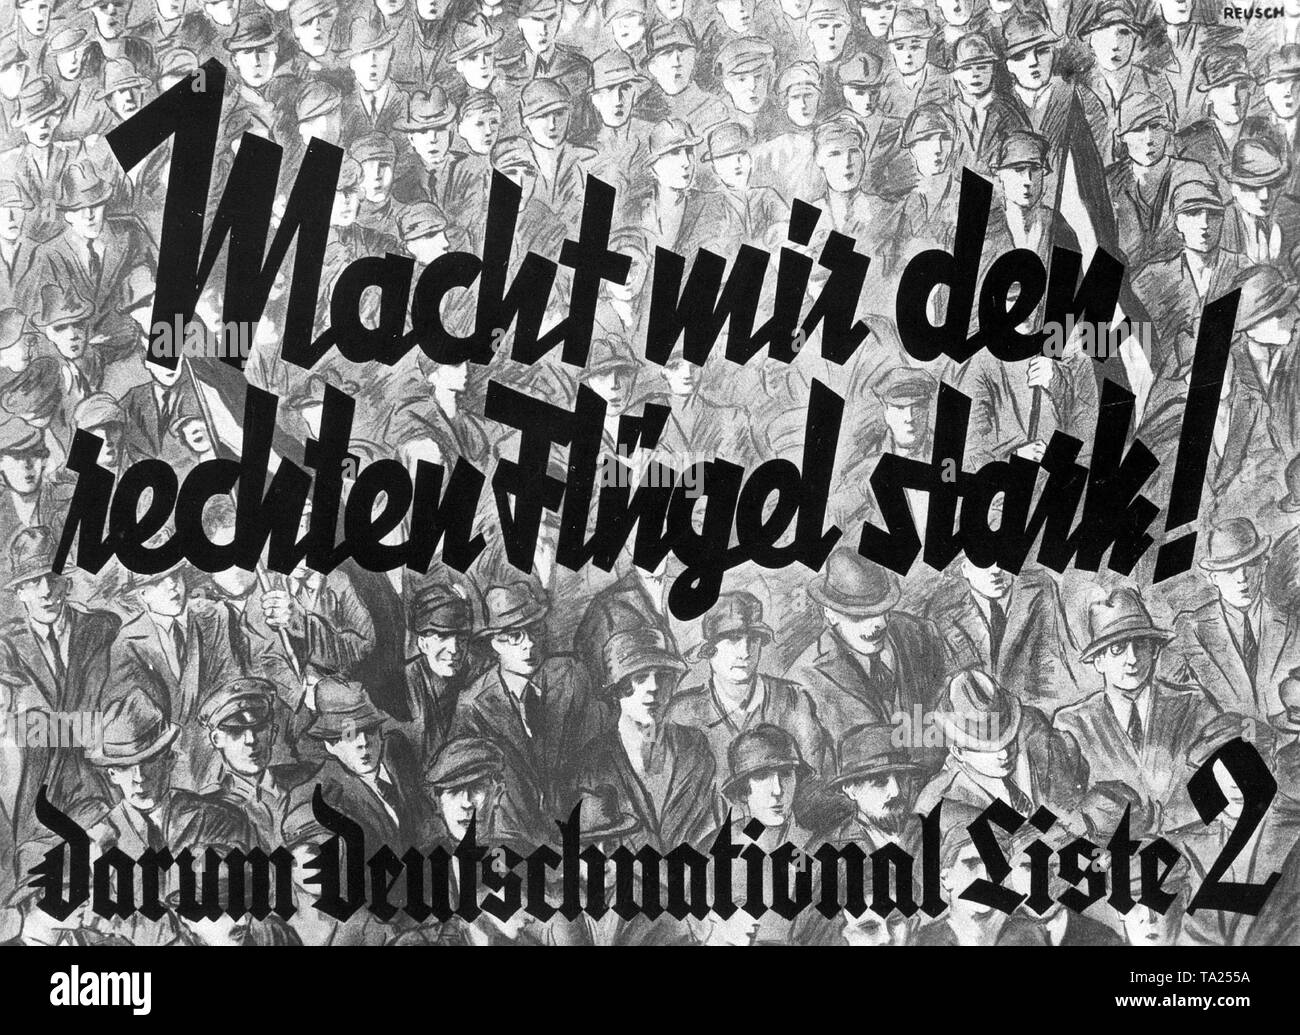 Affiche électorale du Parti National du Peuple allemand pour des élections du Reichstag le 14 septembre, 1930. Banque D'Images